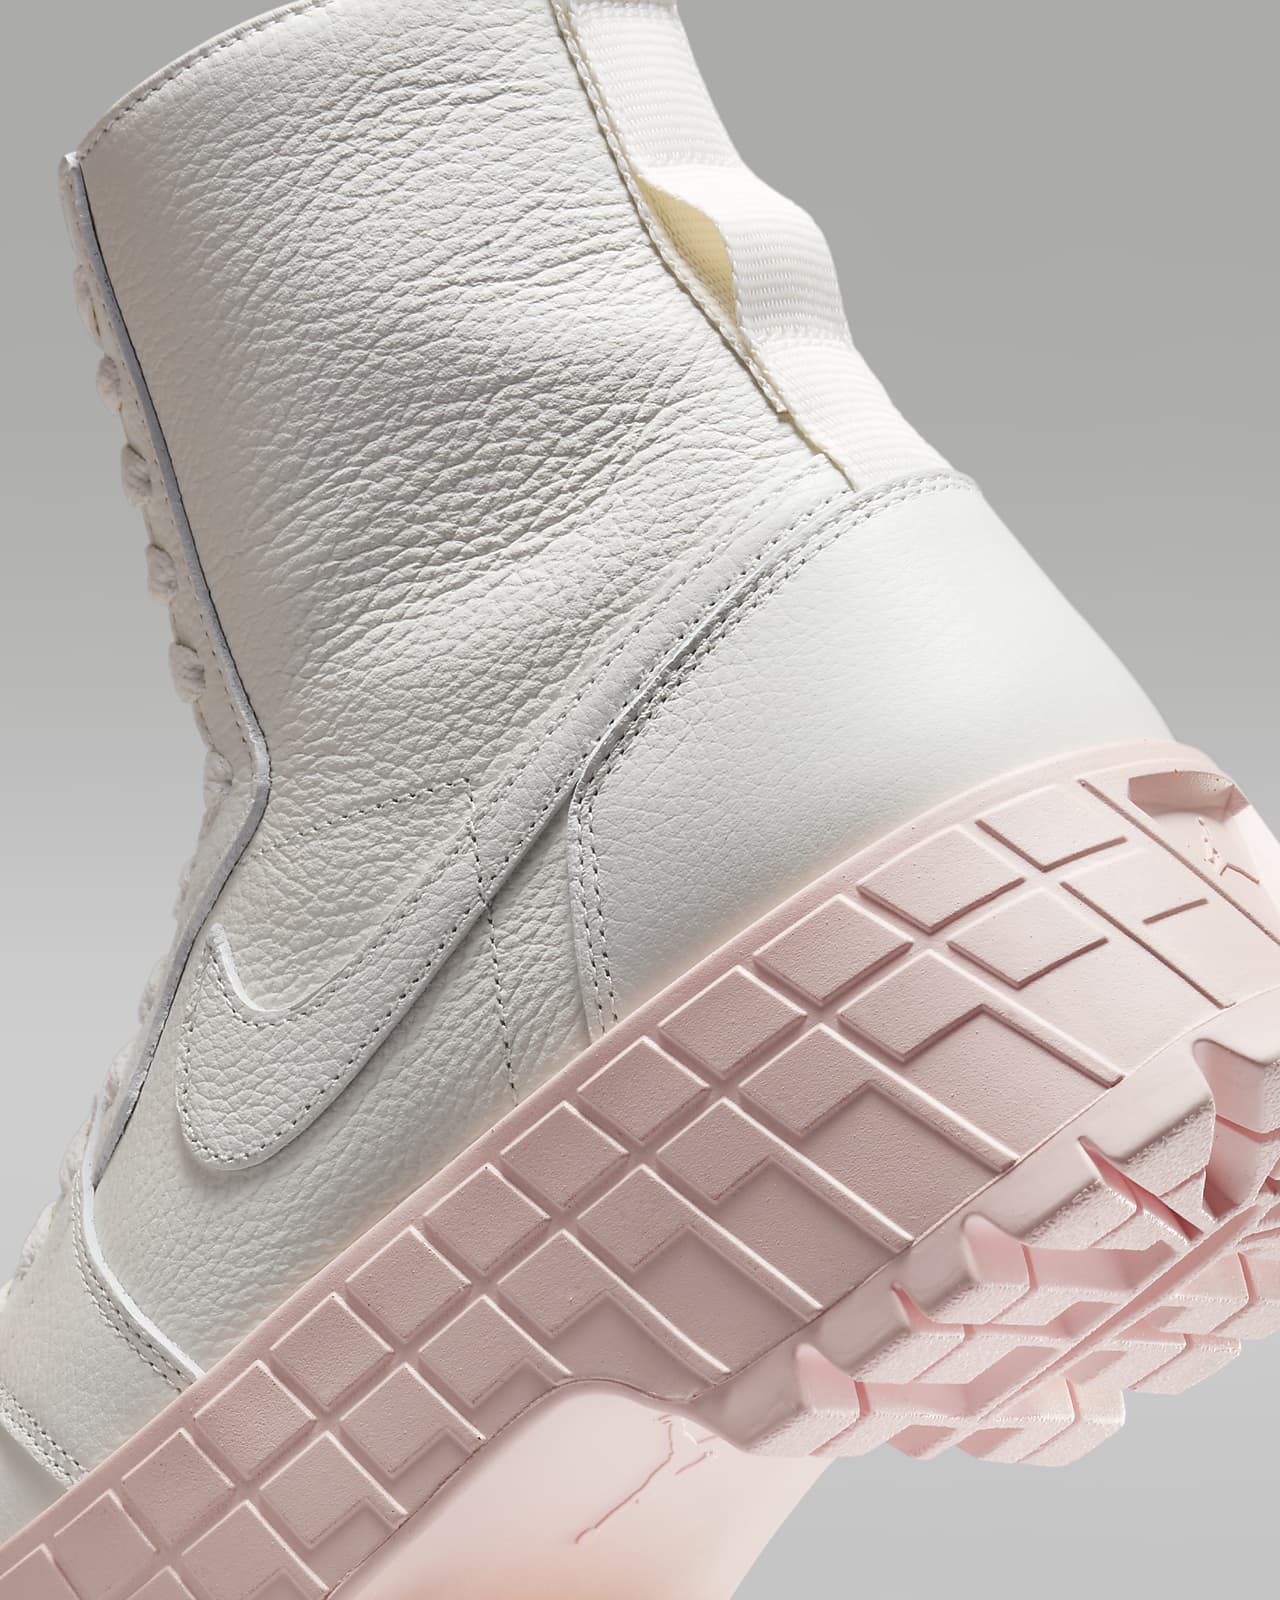 Air Jordan 1 Brooklyn 女靴。Nike TW